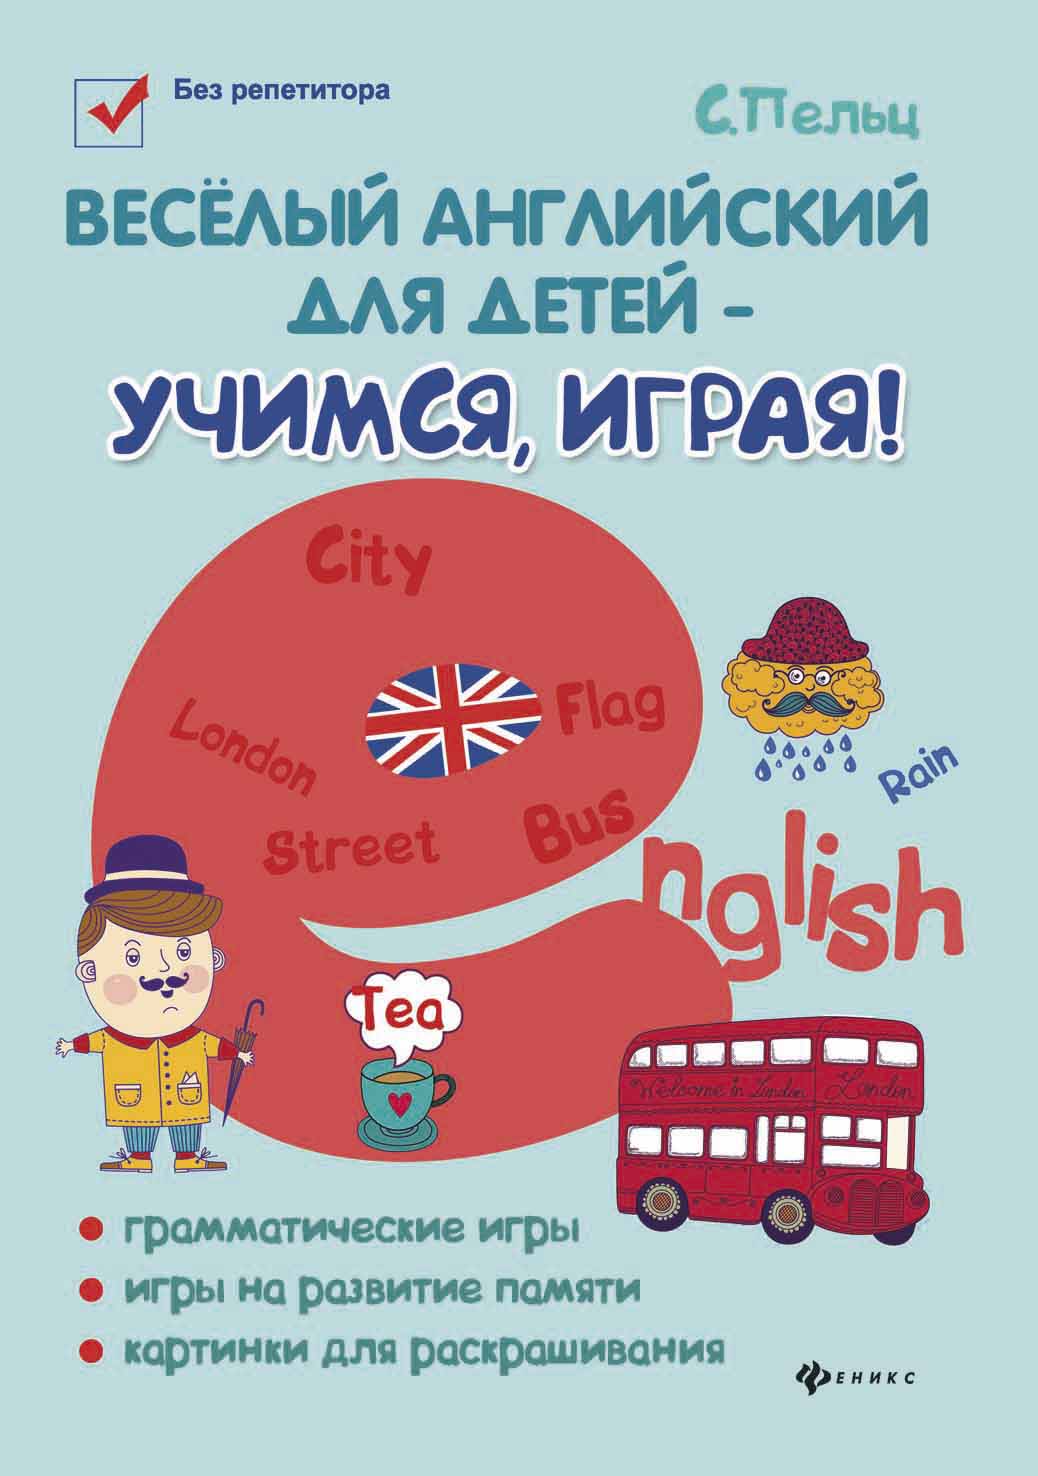 

Веселый английский для детей - учимся, играя! Игровой учебник английского языка для детей